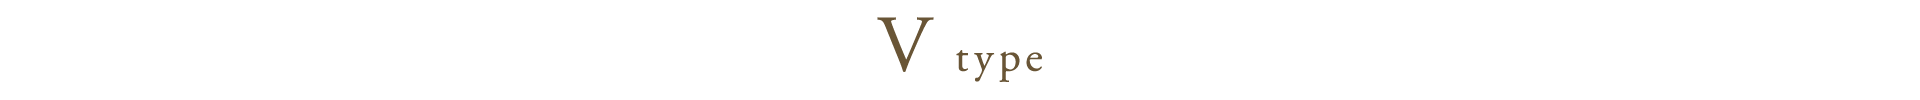 V type